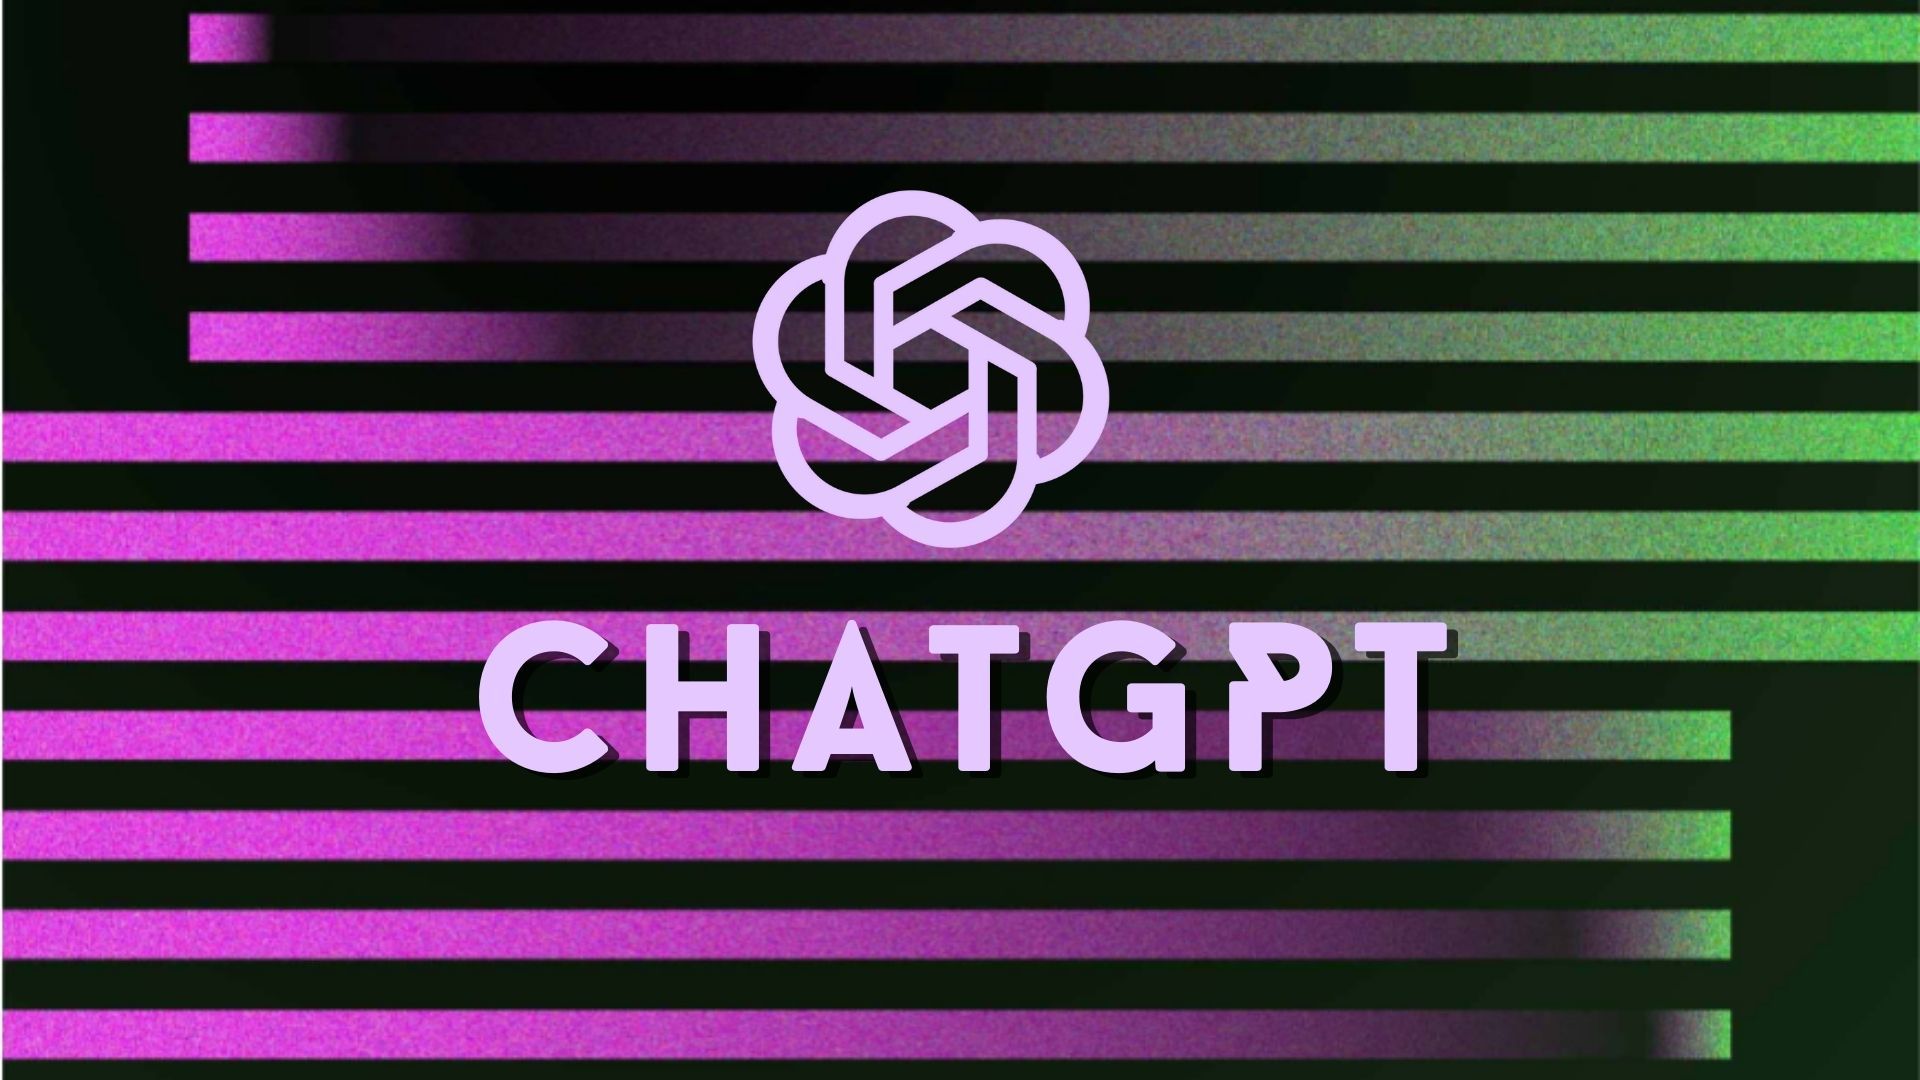 5 dicas muito úteis para usar o ChatGPT como tradutor